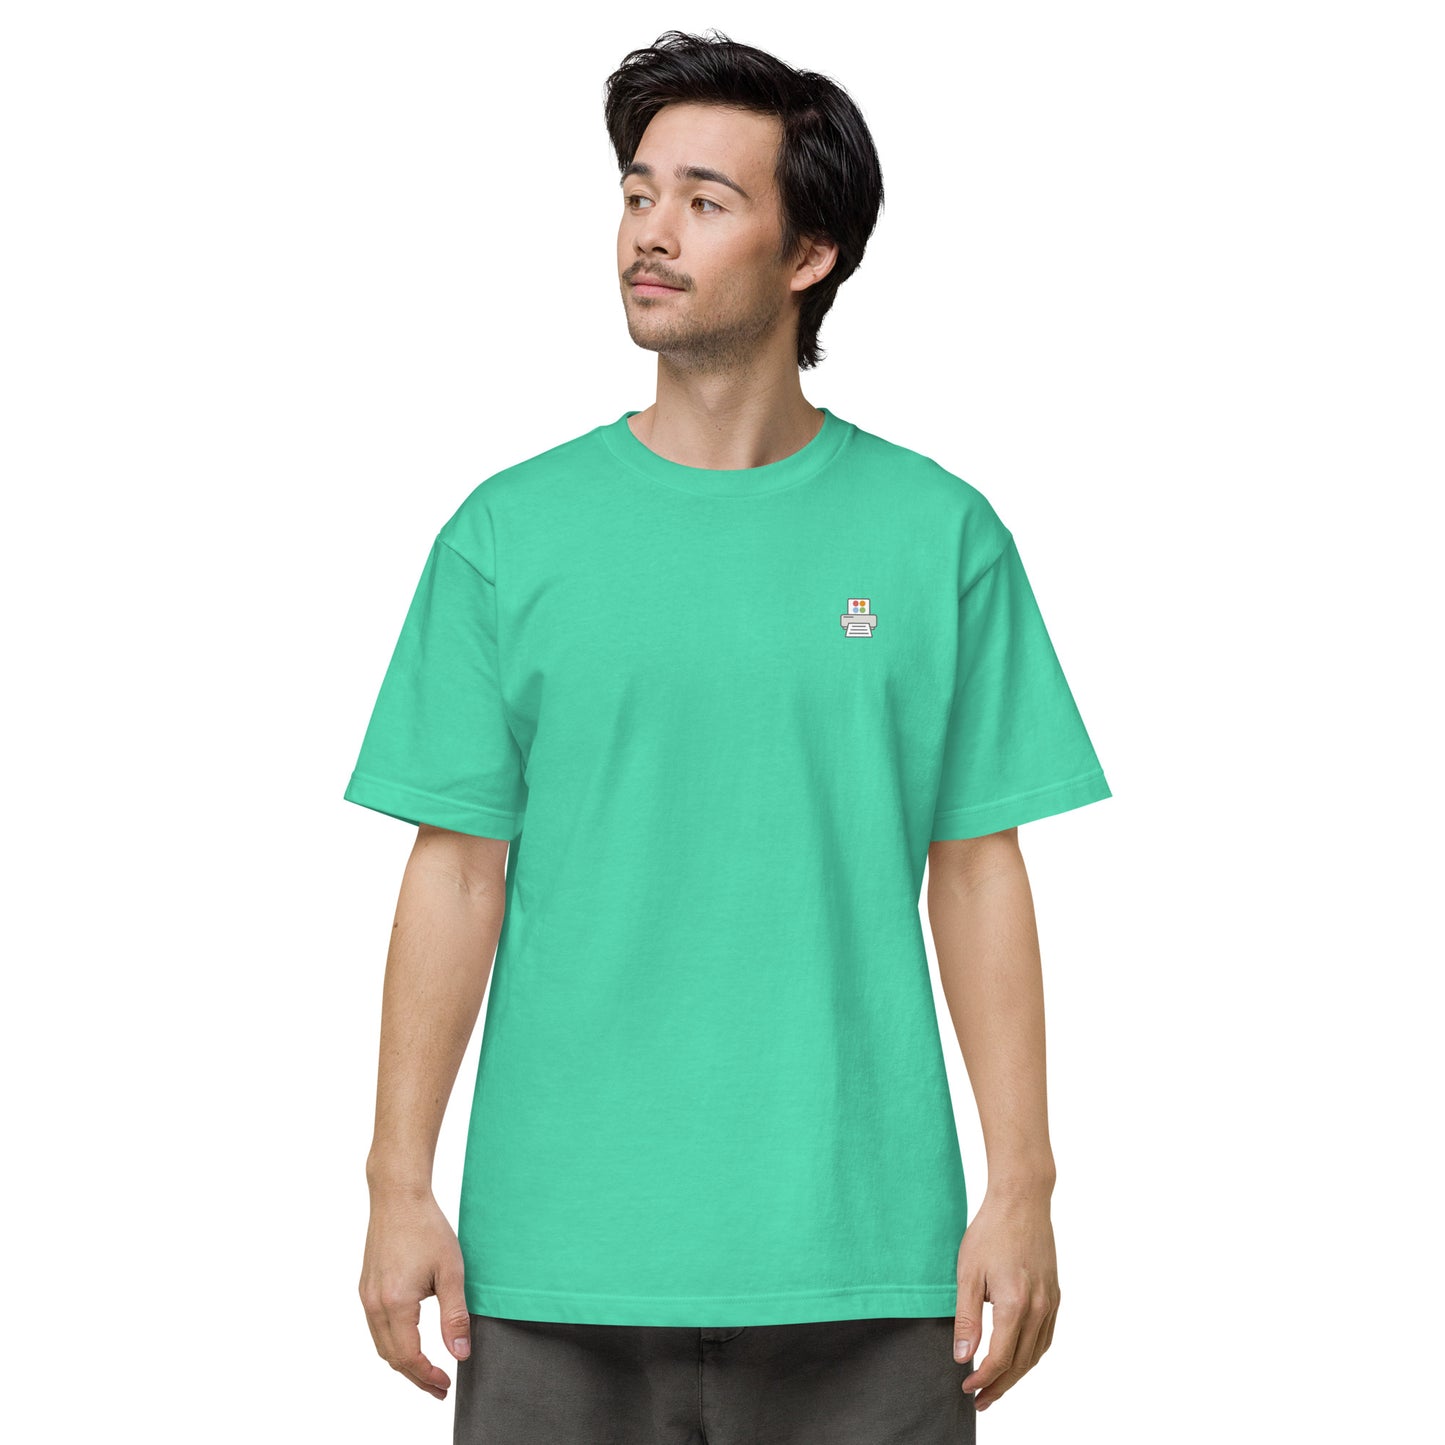 Quick Order Printer ワンポイント ユニセックス ヘビーウェイト 半袖Tシャツ